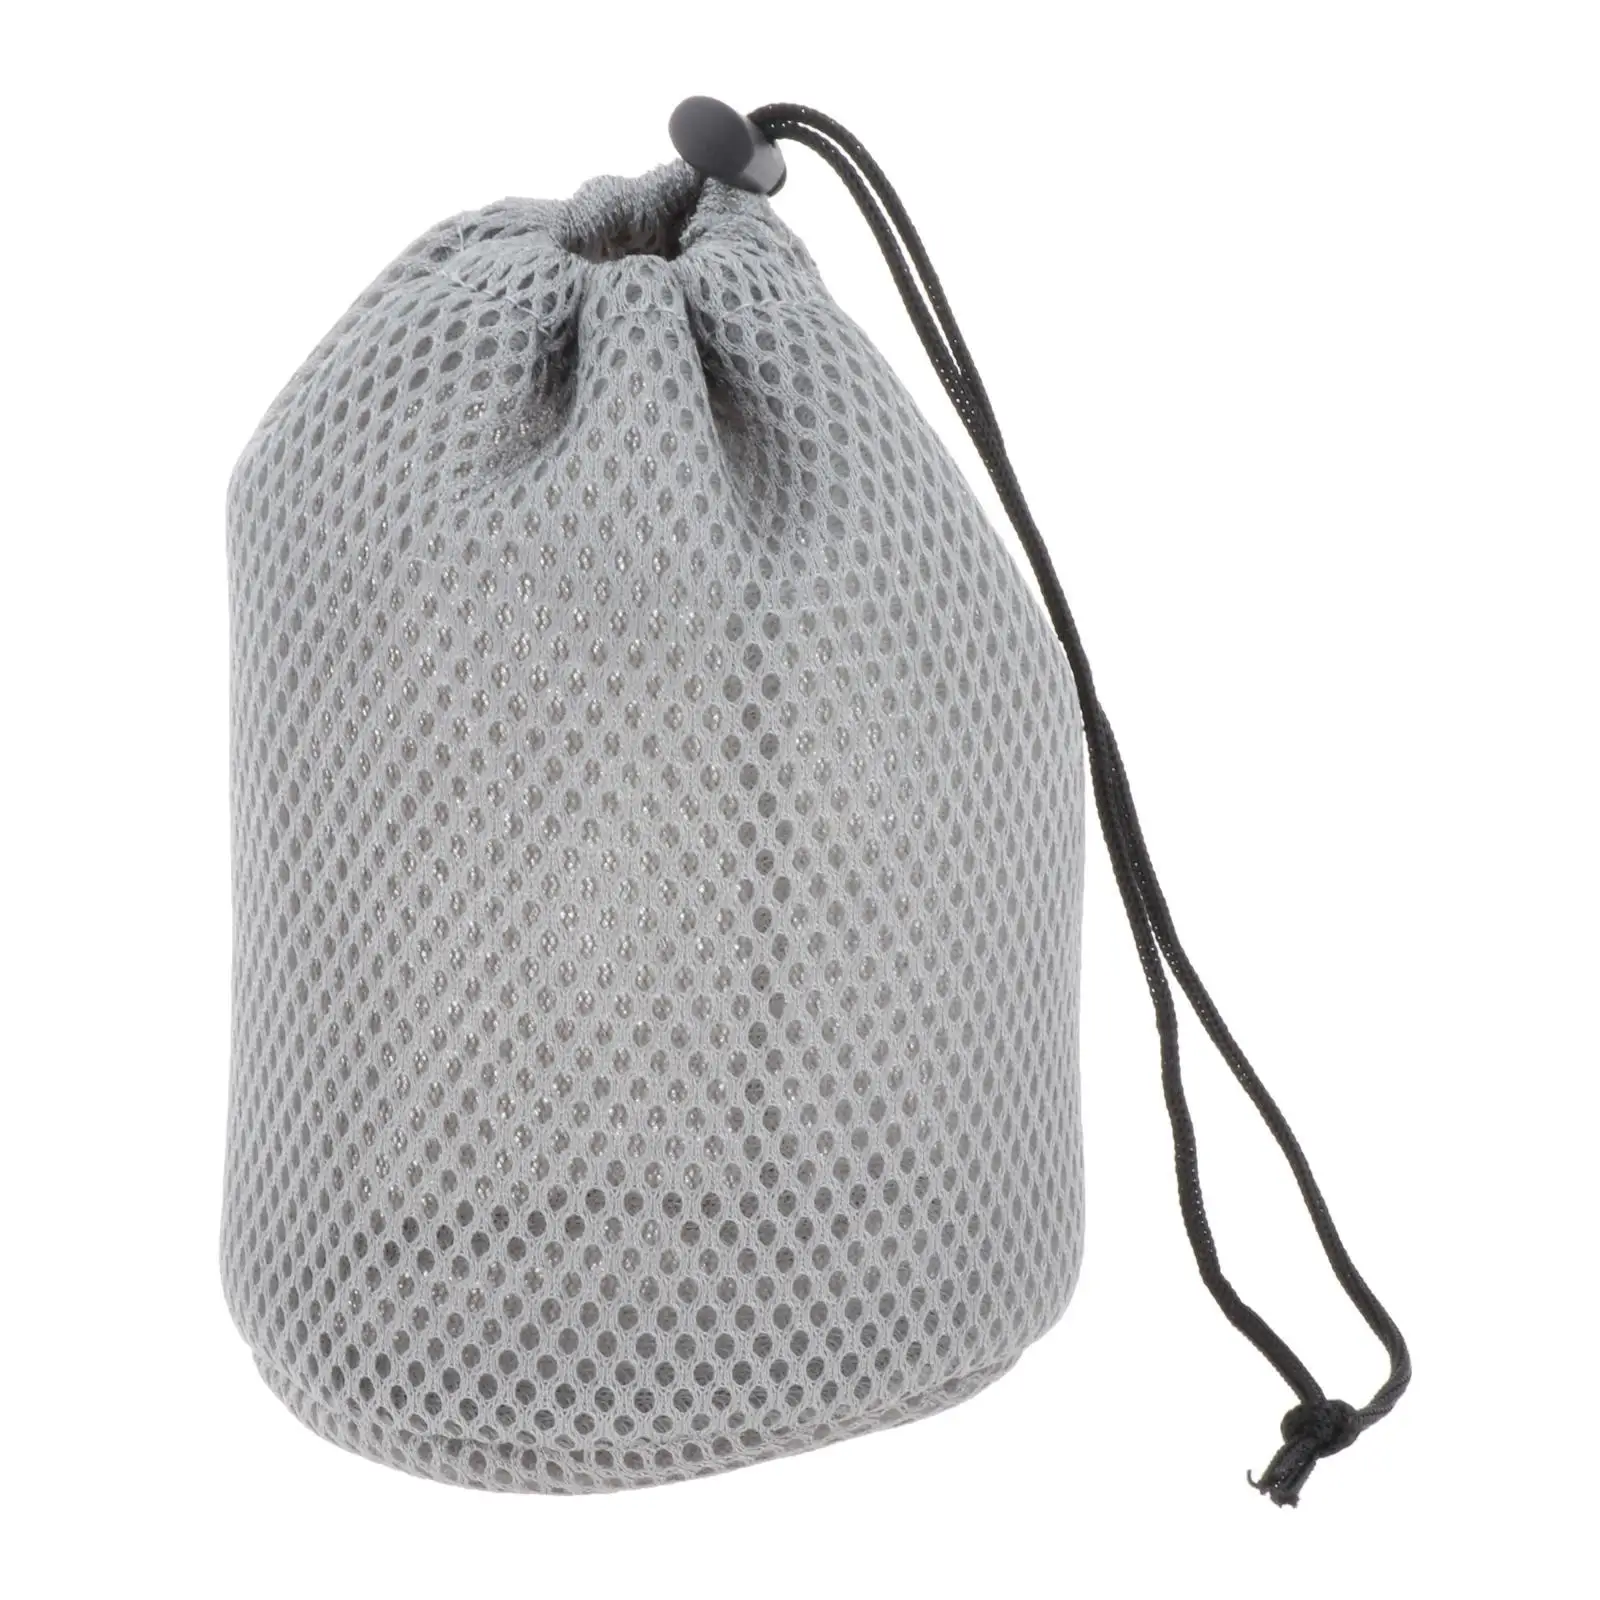 Portable Mesh Drawstring Bag Stuff Storage Sack Pouch  Pot Pan Carrier